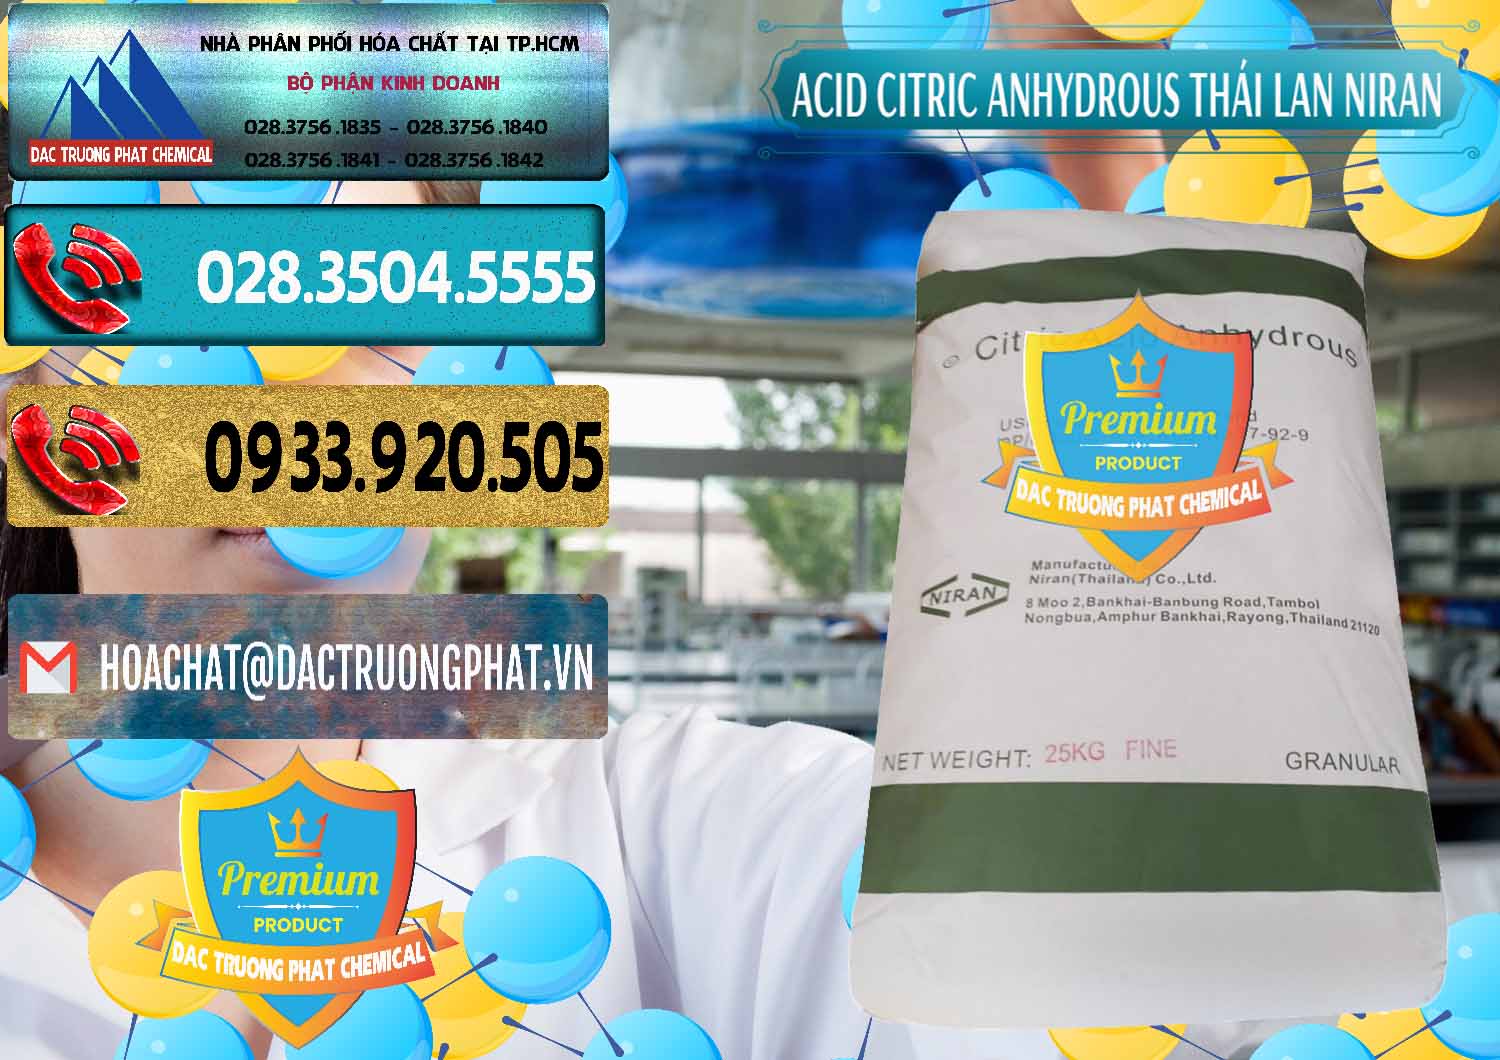 Đơn vị cung cấp và bán Acid Citric - Axit Citric Anhydrous - Thái Lan Niran - 0231 - Cty cung cấp _ bán hóa chất tại TP.HCM - hoachatdetnhuom.com